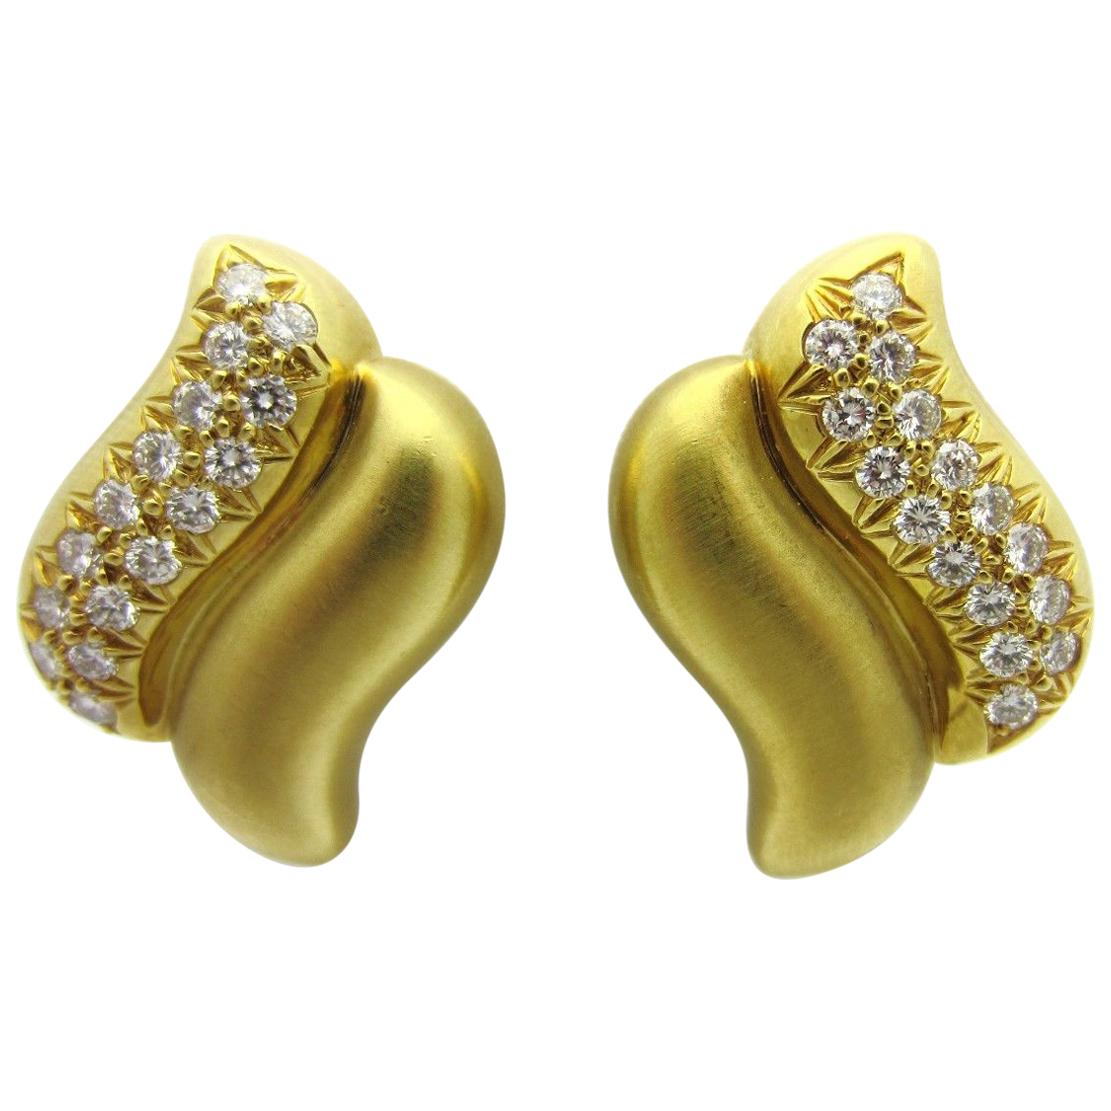 Marlene Stowe Diamond Double Wave Clip-On Earrings 18 Karat Yellow Gold